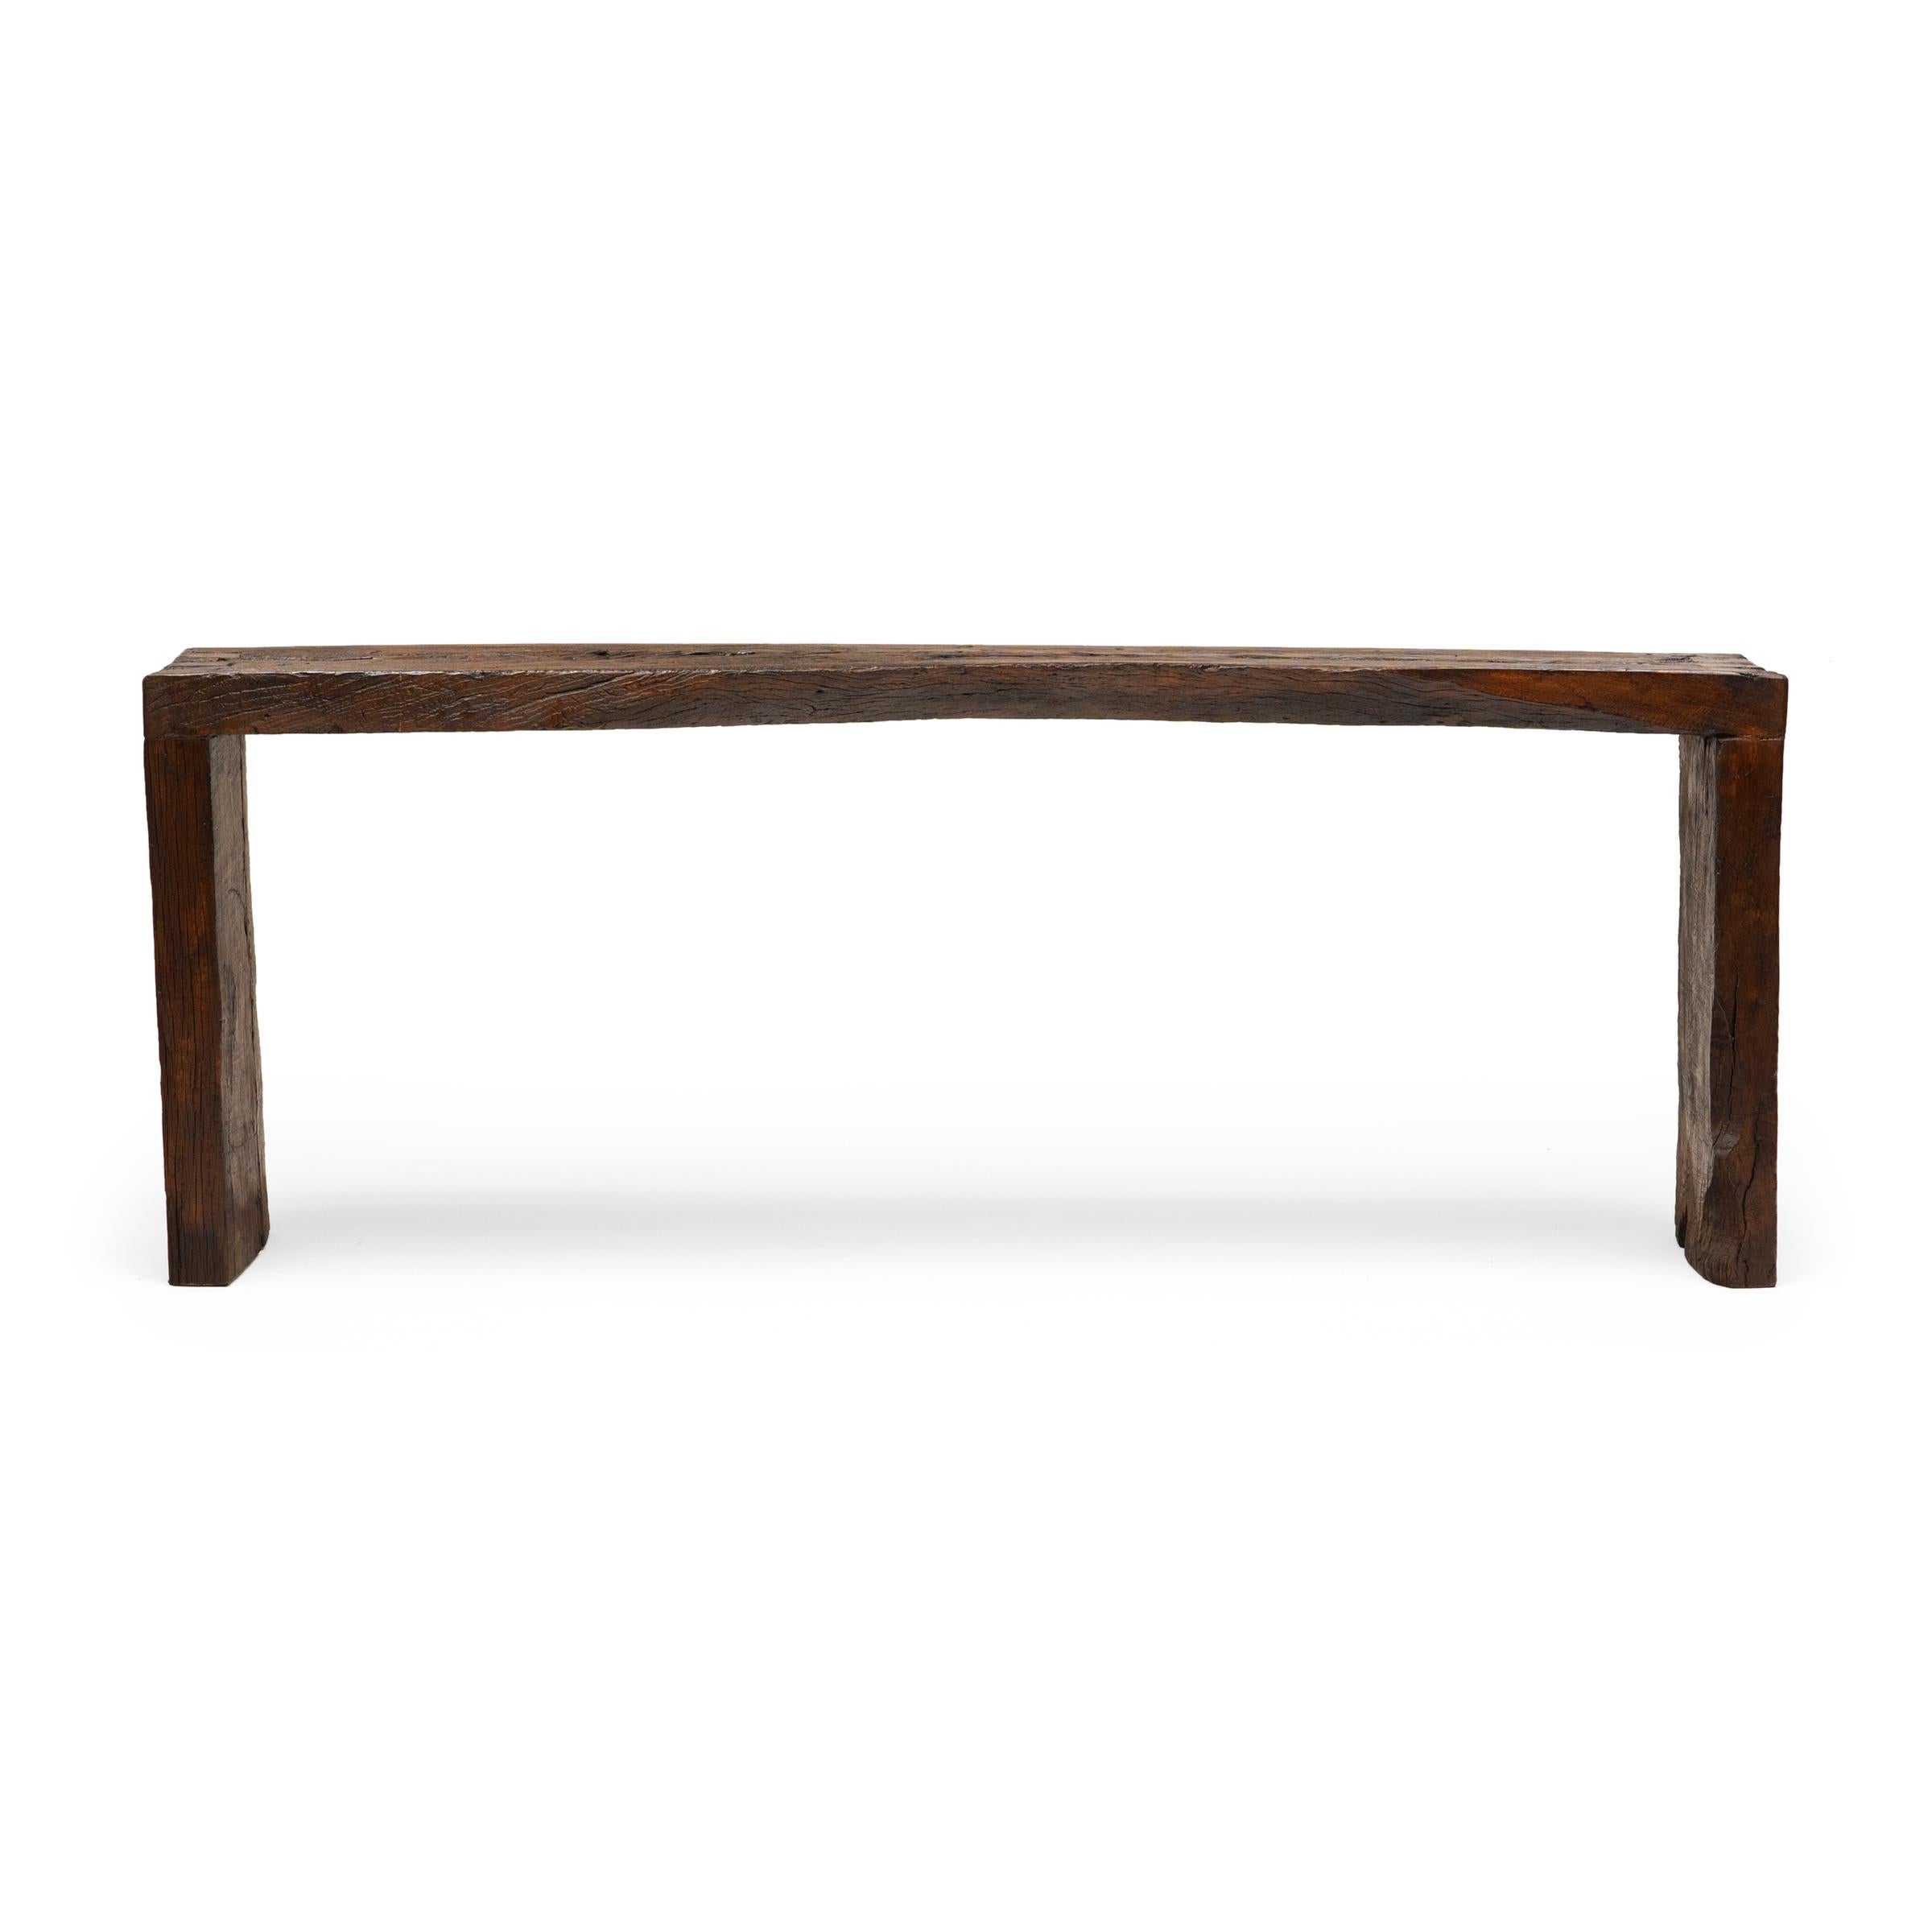 Dieser moderne Konsolentisch zelebriert den Wabi-Sabi-Stil. Der Tisch ist aus Holz gefertigt, das aus der Architektur der Qing-Dynastie stammt, und hat ein minimalistisches Wasserfalldesign mit schwalbenschwanzförmigen Ecken, die traditionelle